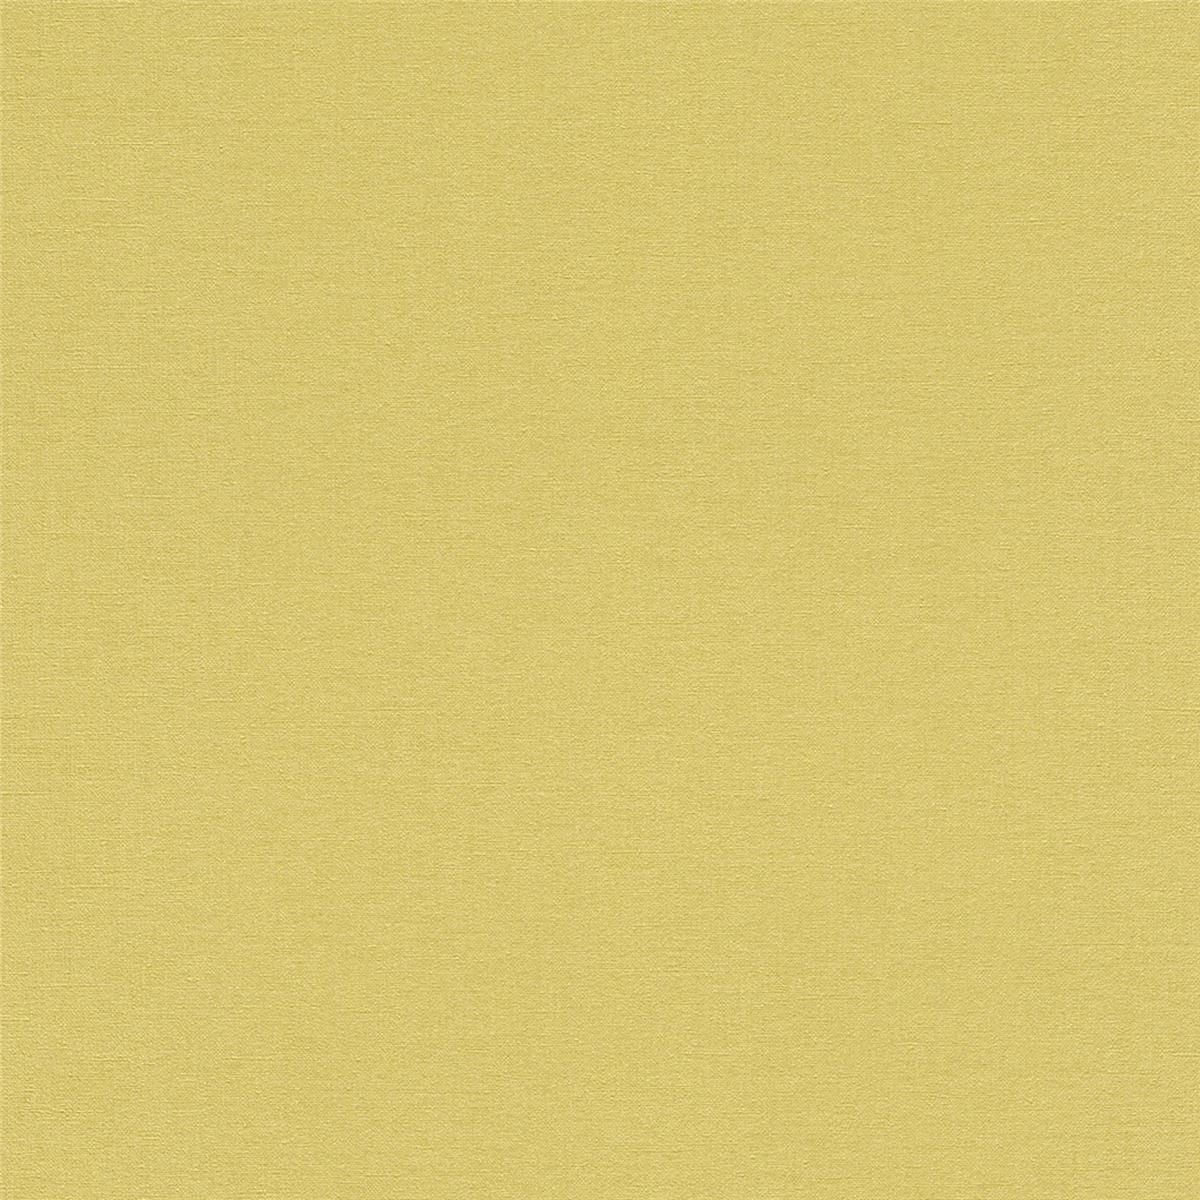 Tapete Basic universell Vinyltapete Gelb ansatzfrei 53 cm x 10,05 m